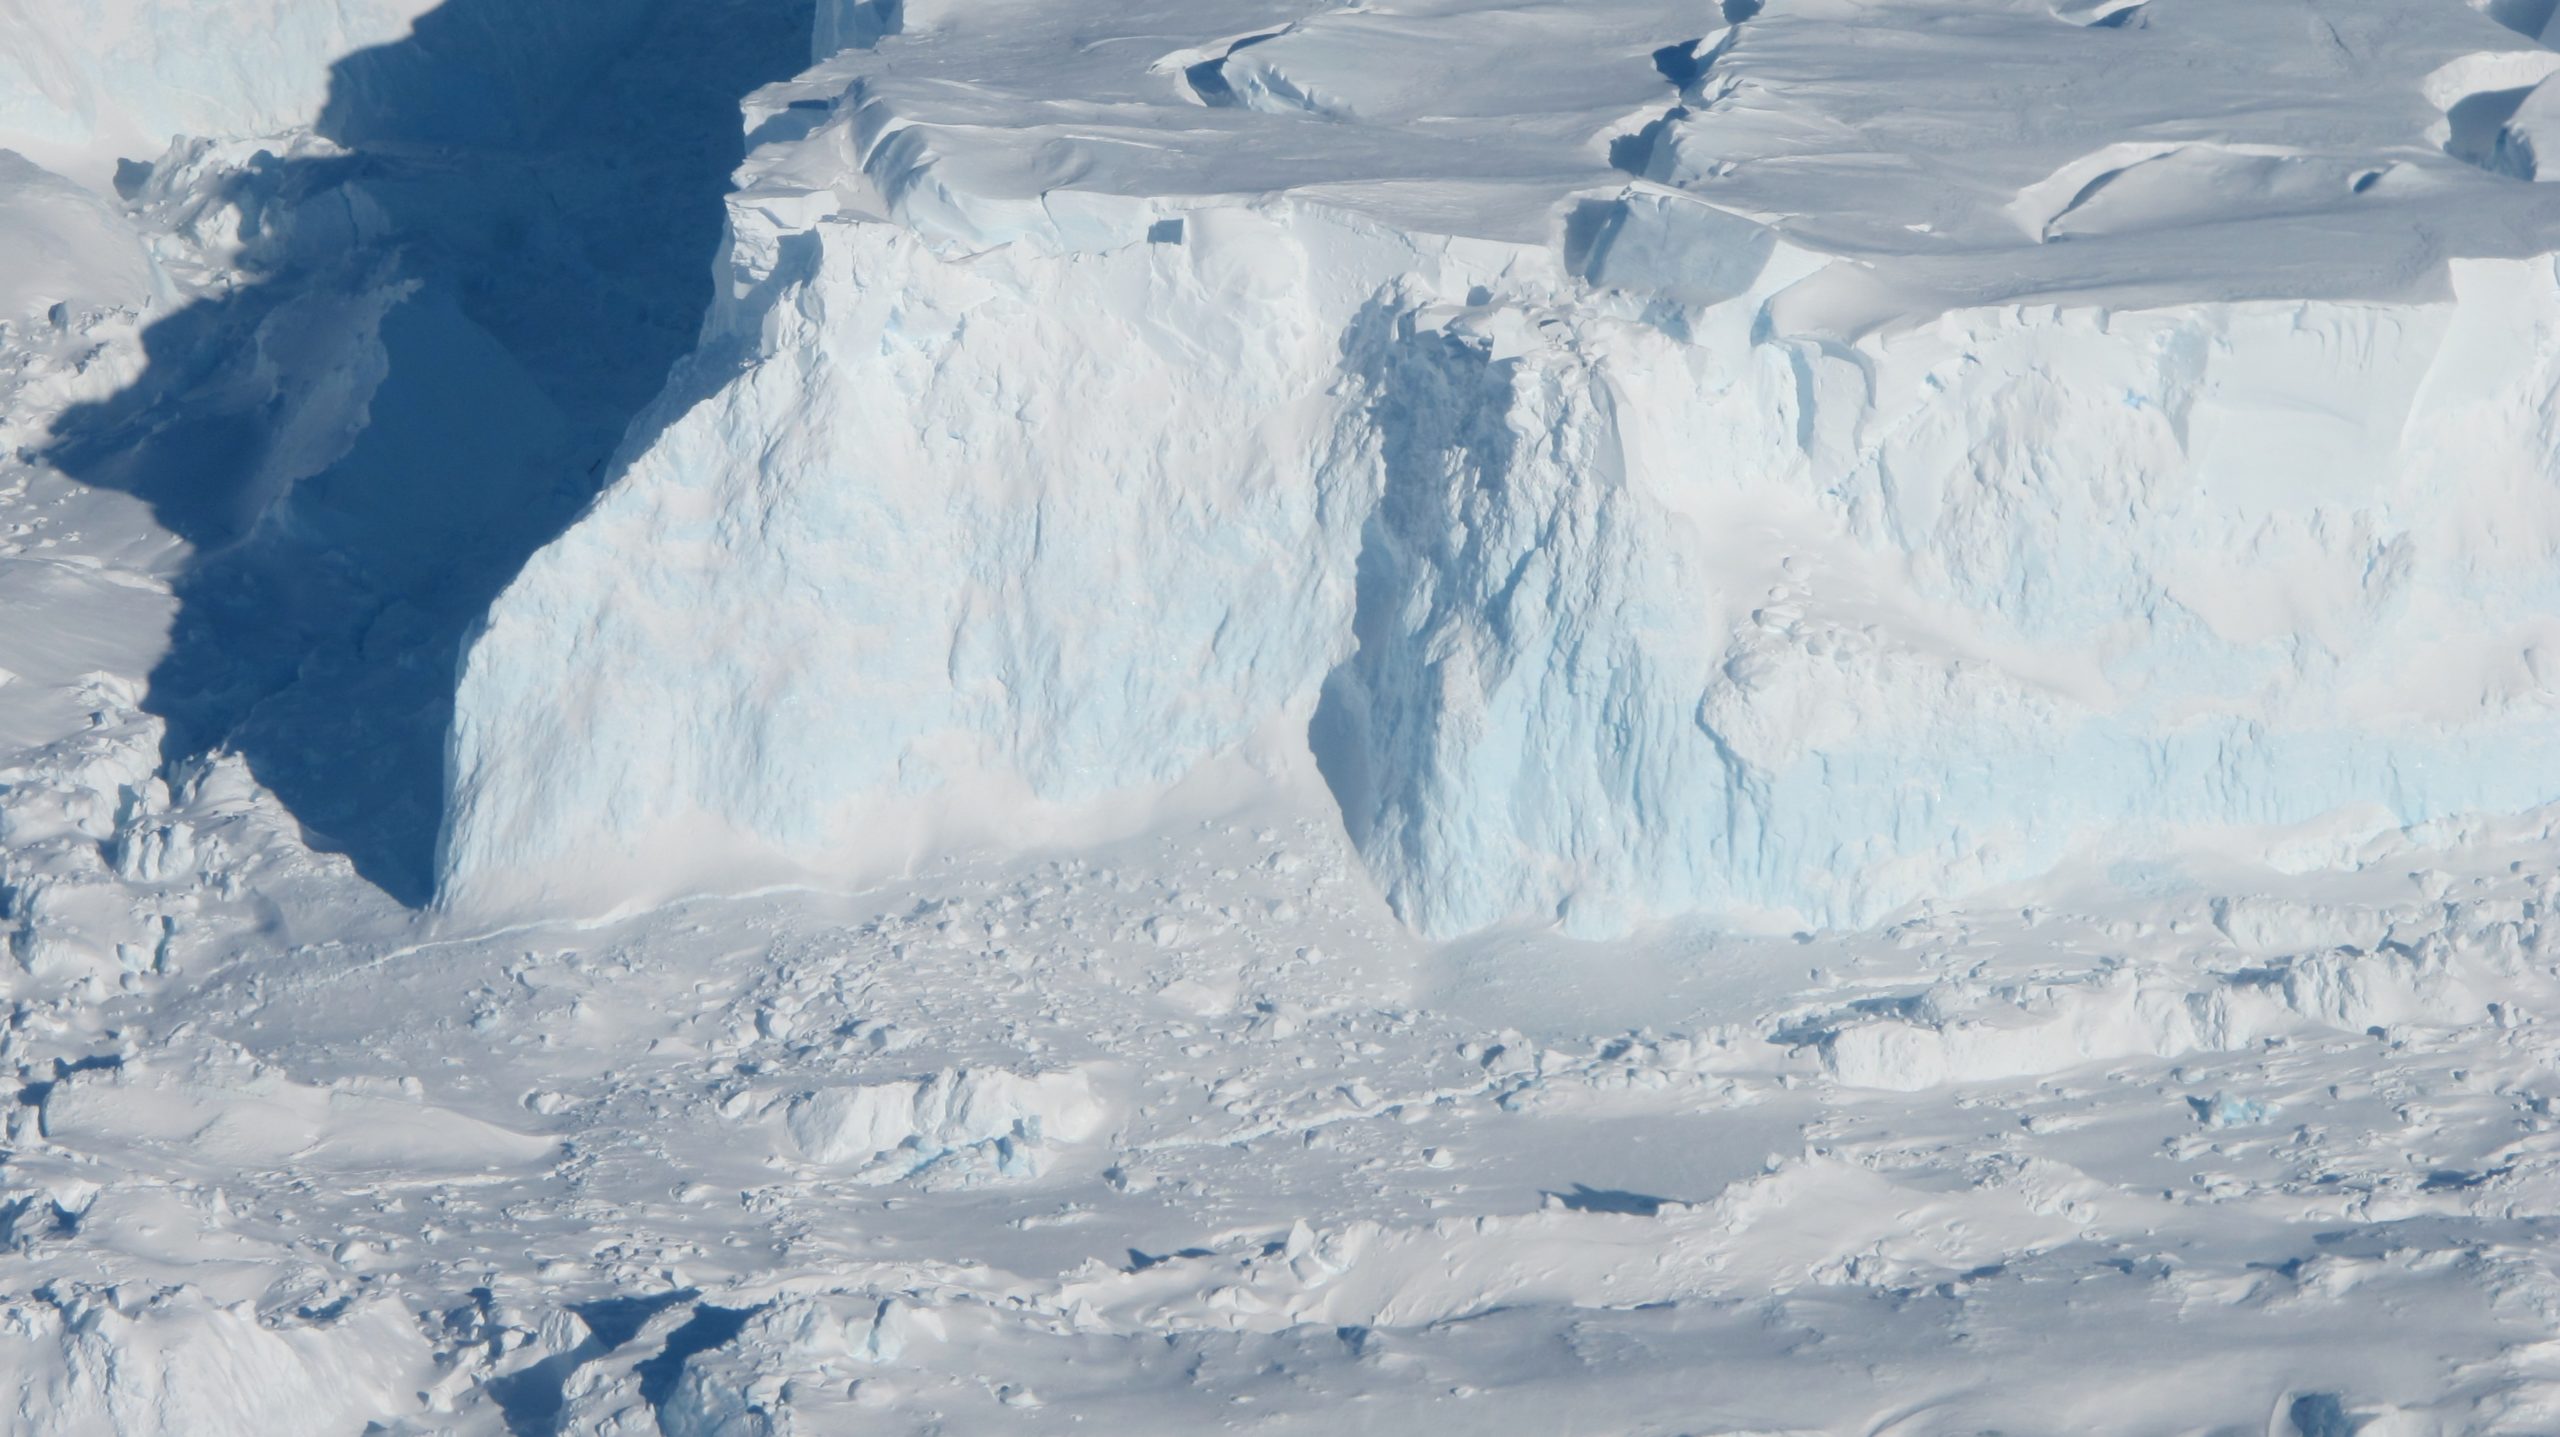 Cracking Antarctica Largest Thwaites Glacier: Scientists Warn The World